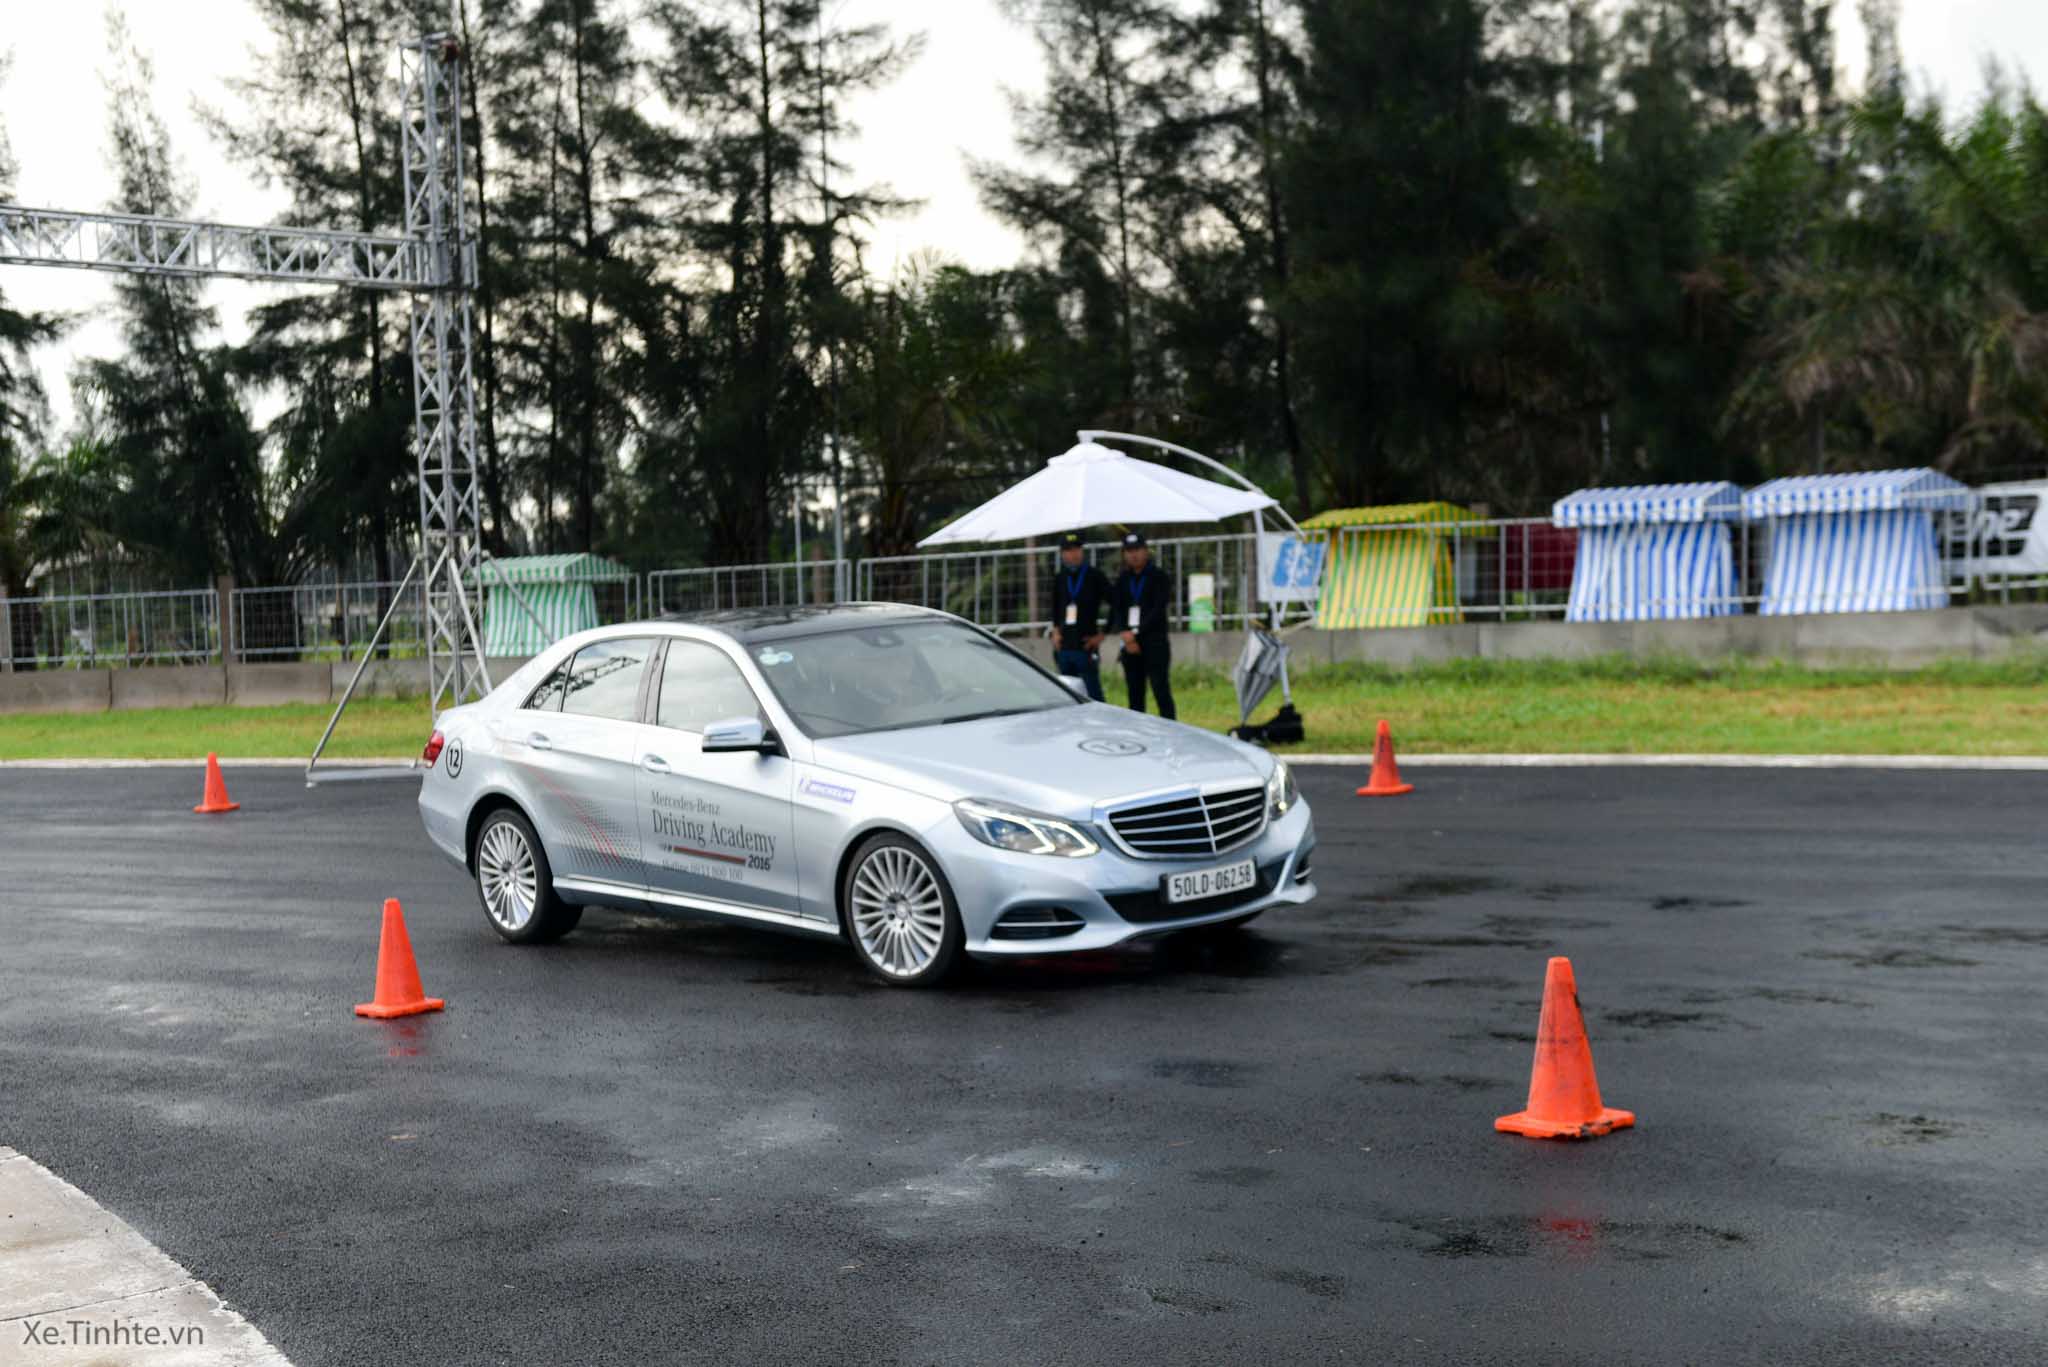 Xe.Tinhte.vn-Mercedes-Benz-Driving-Academy-2016-4.jpg